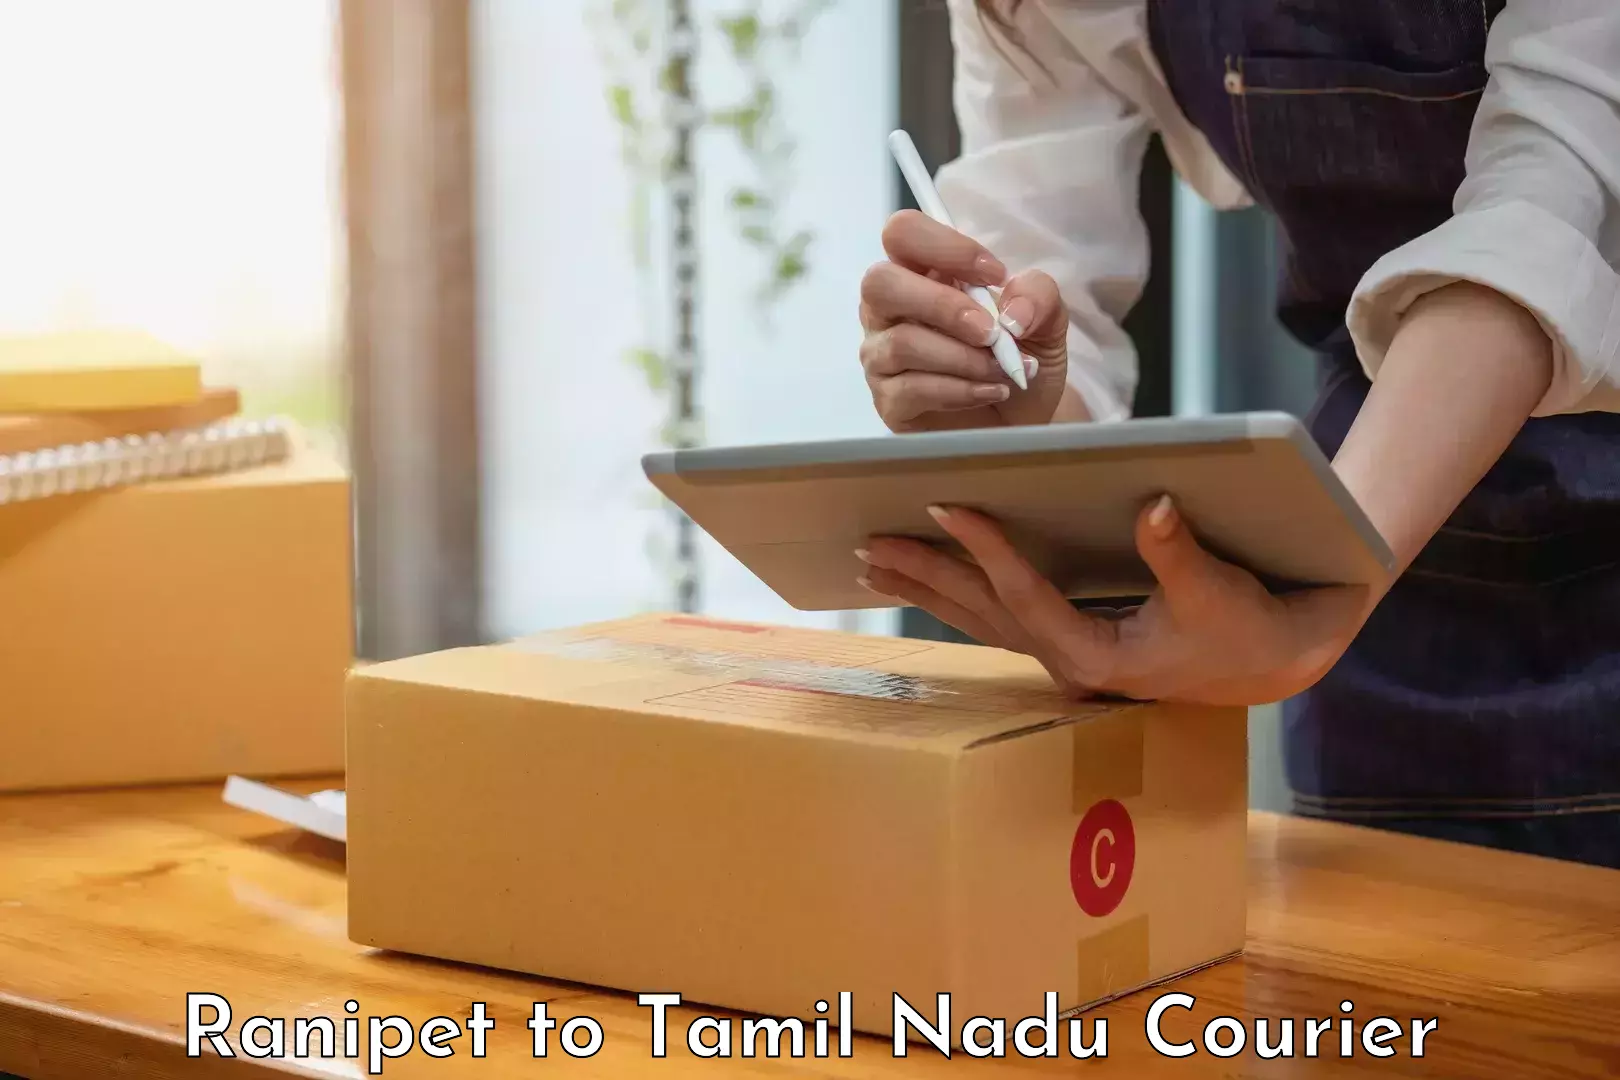 Affordable parcel service Ranipet to Kanchipuram